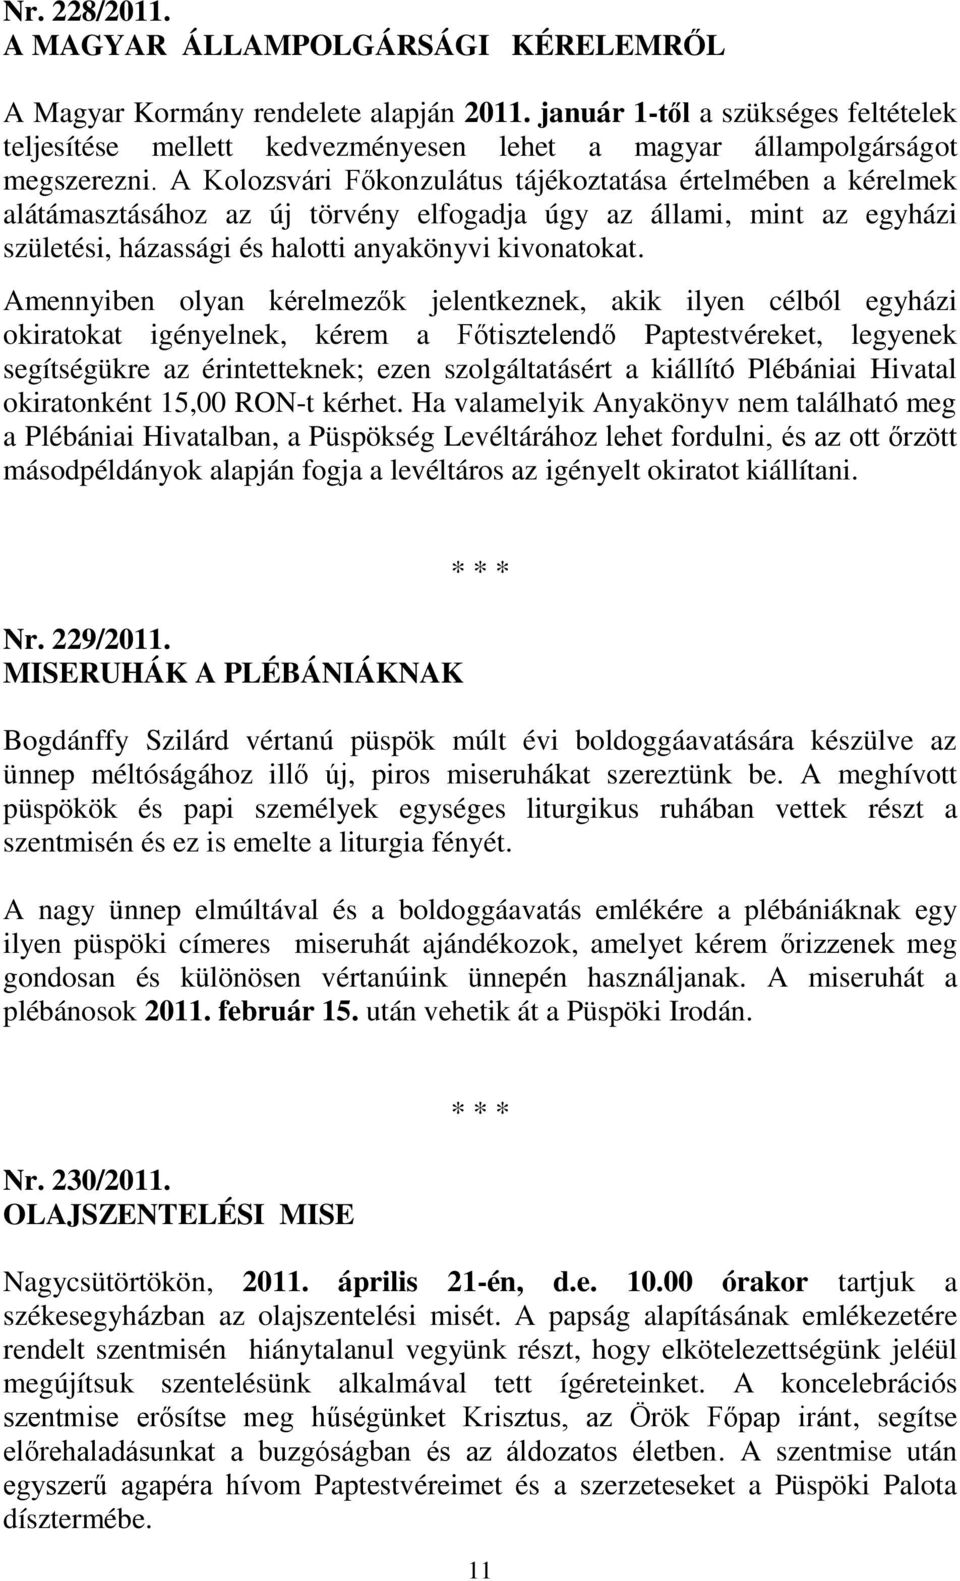 A Kolozsvári Főkonzulátus tájékoztatása értelmében a kérelmek alátámasztásához az új törvény elfogadja úgy az állami, mint az egyházi születési, házassági és halotti anyakönyvi kivonatokat.